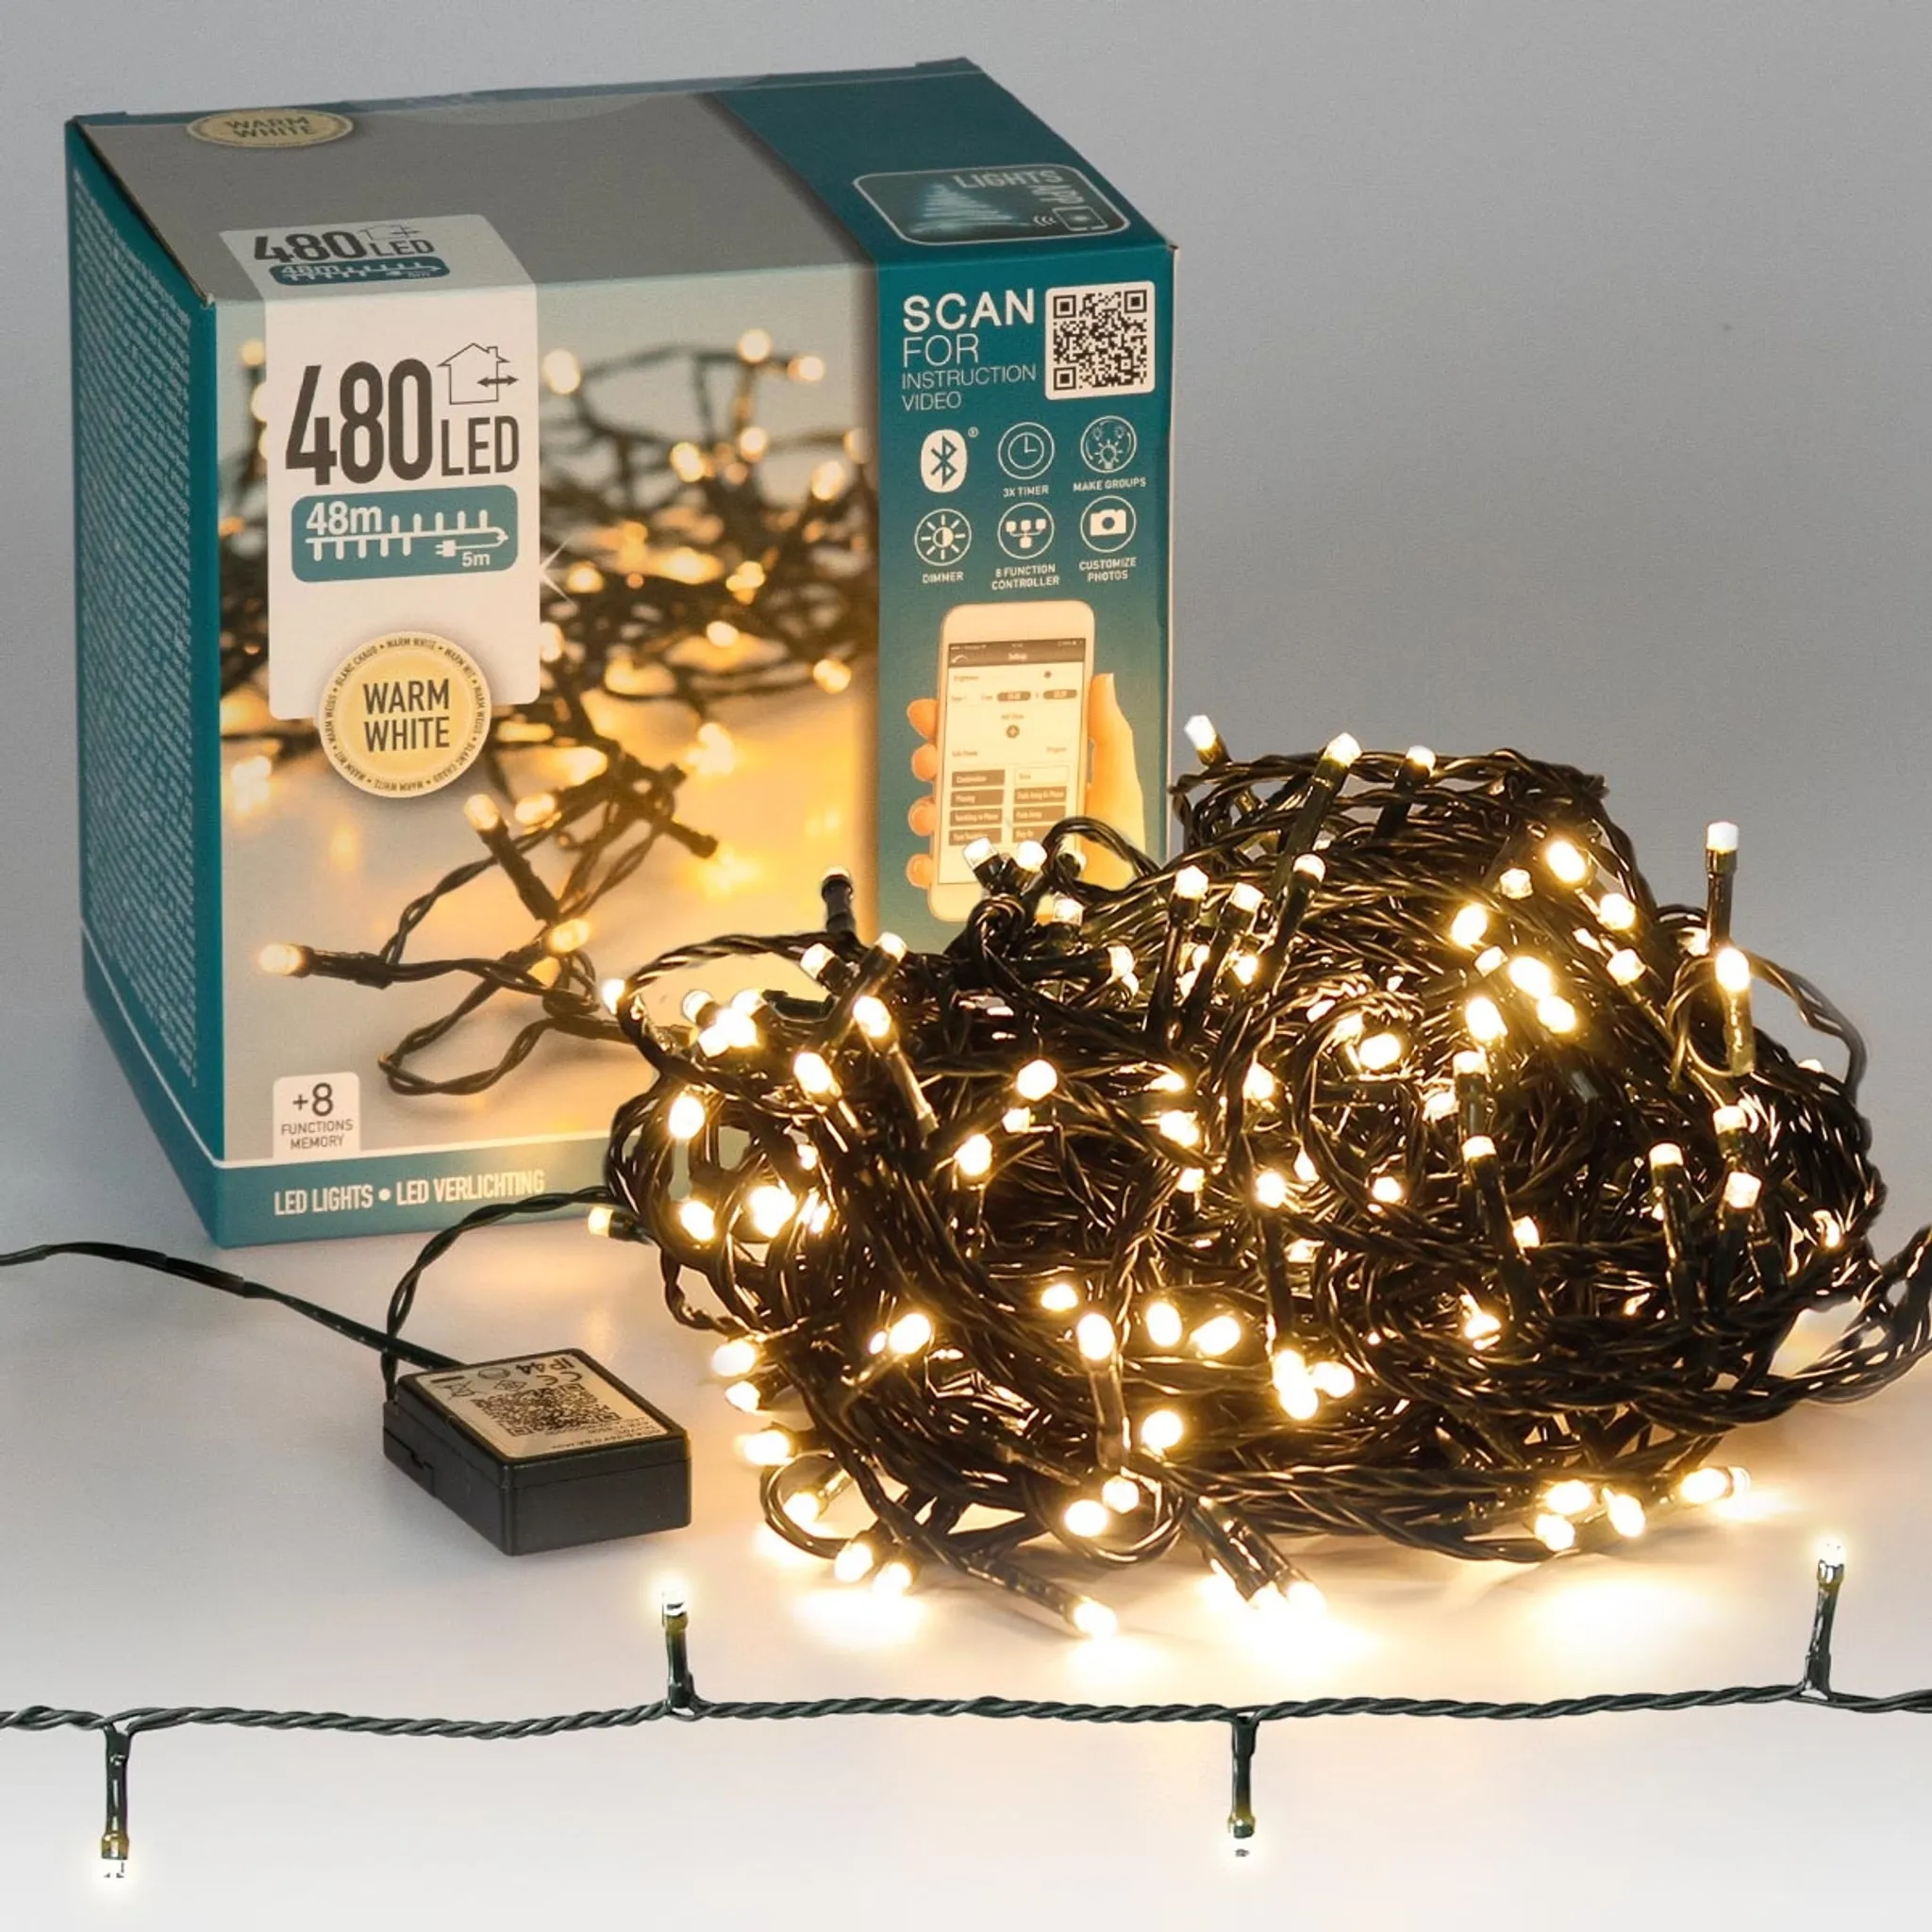 480 LED Lichterkette warmweiß aussen Kabel grün mit Timer Fernbedienung Progamme Dimmen 